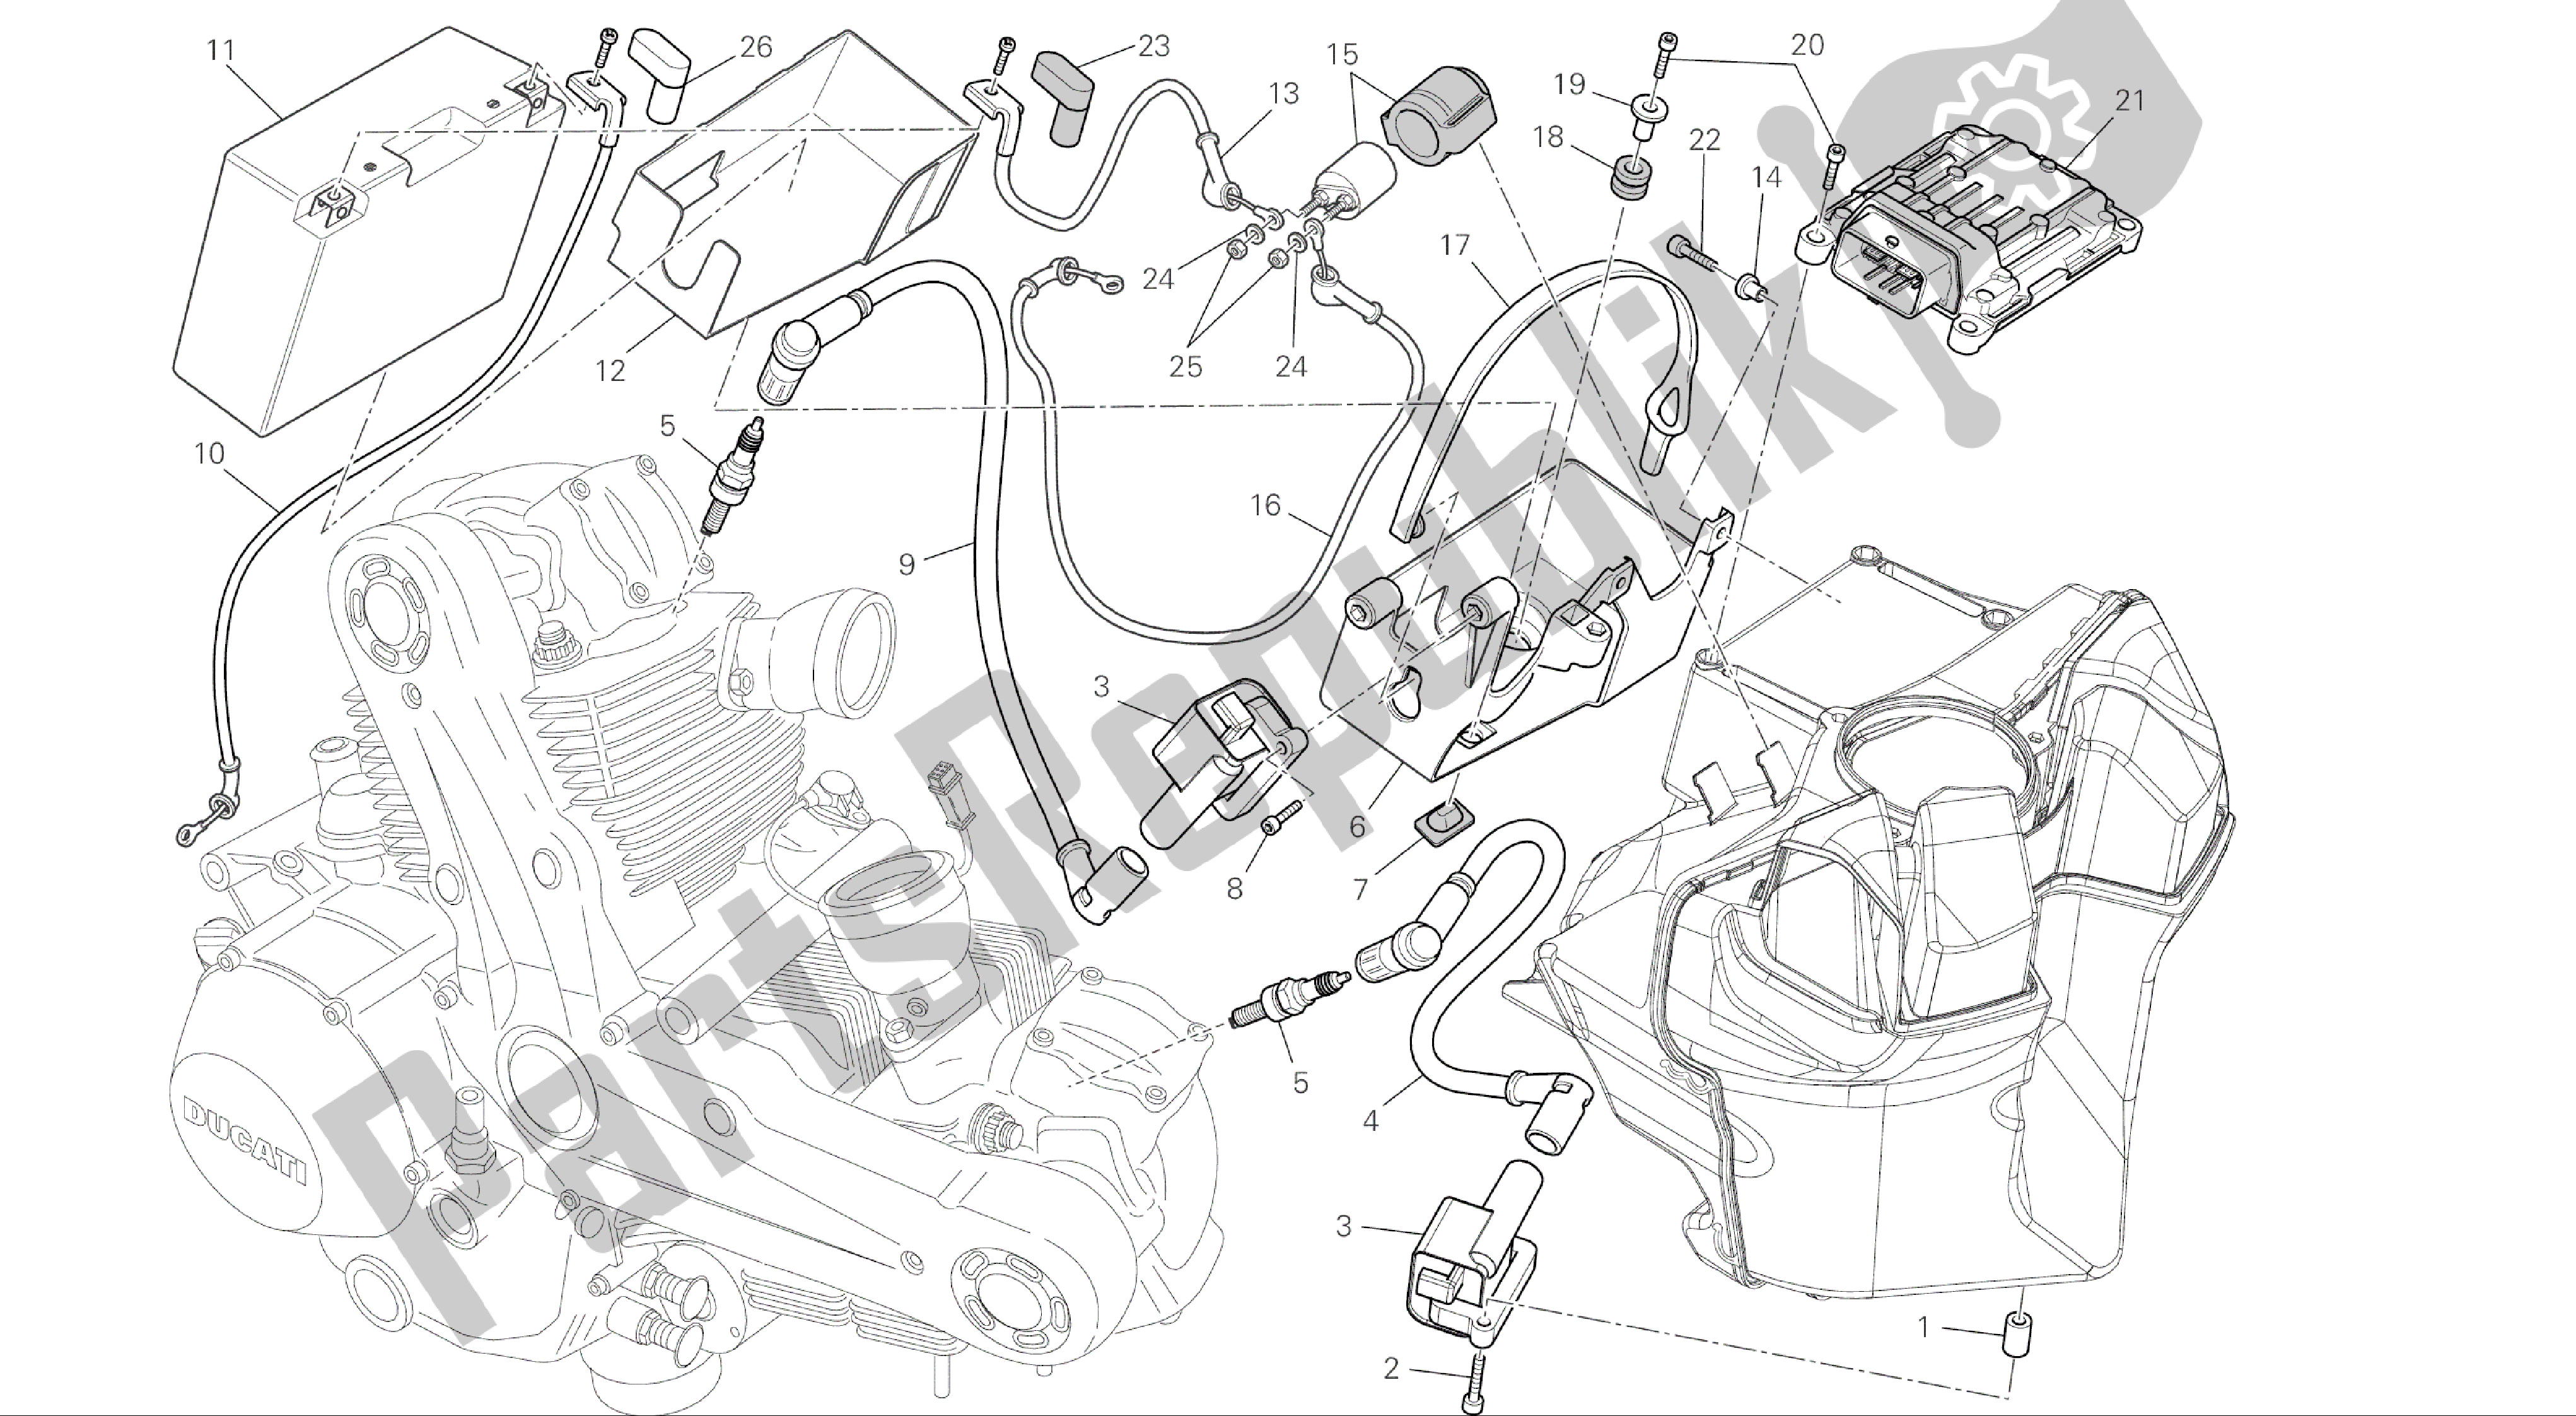 Todas las partes para Dibujo 019 - Batería [mod: M696 Abs, M696 + Abs; Xst: Aus, Eur, Jap] Grupo Eléctrico de Ducati Monster ABS 696 2014